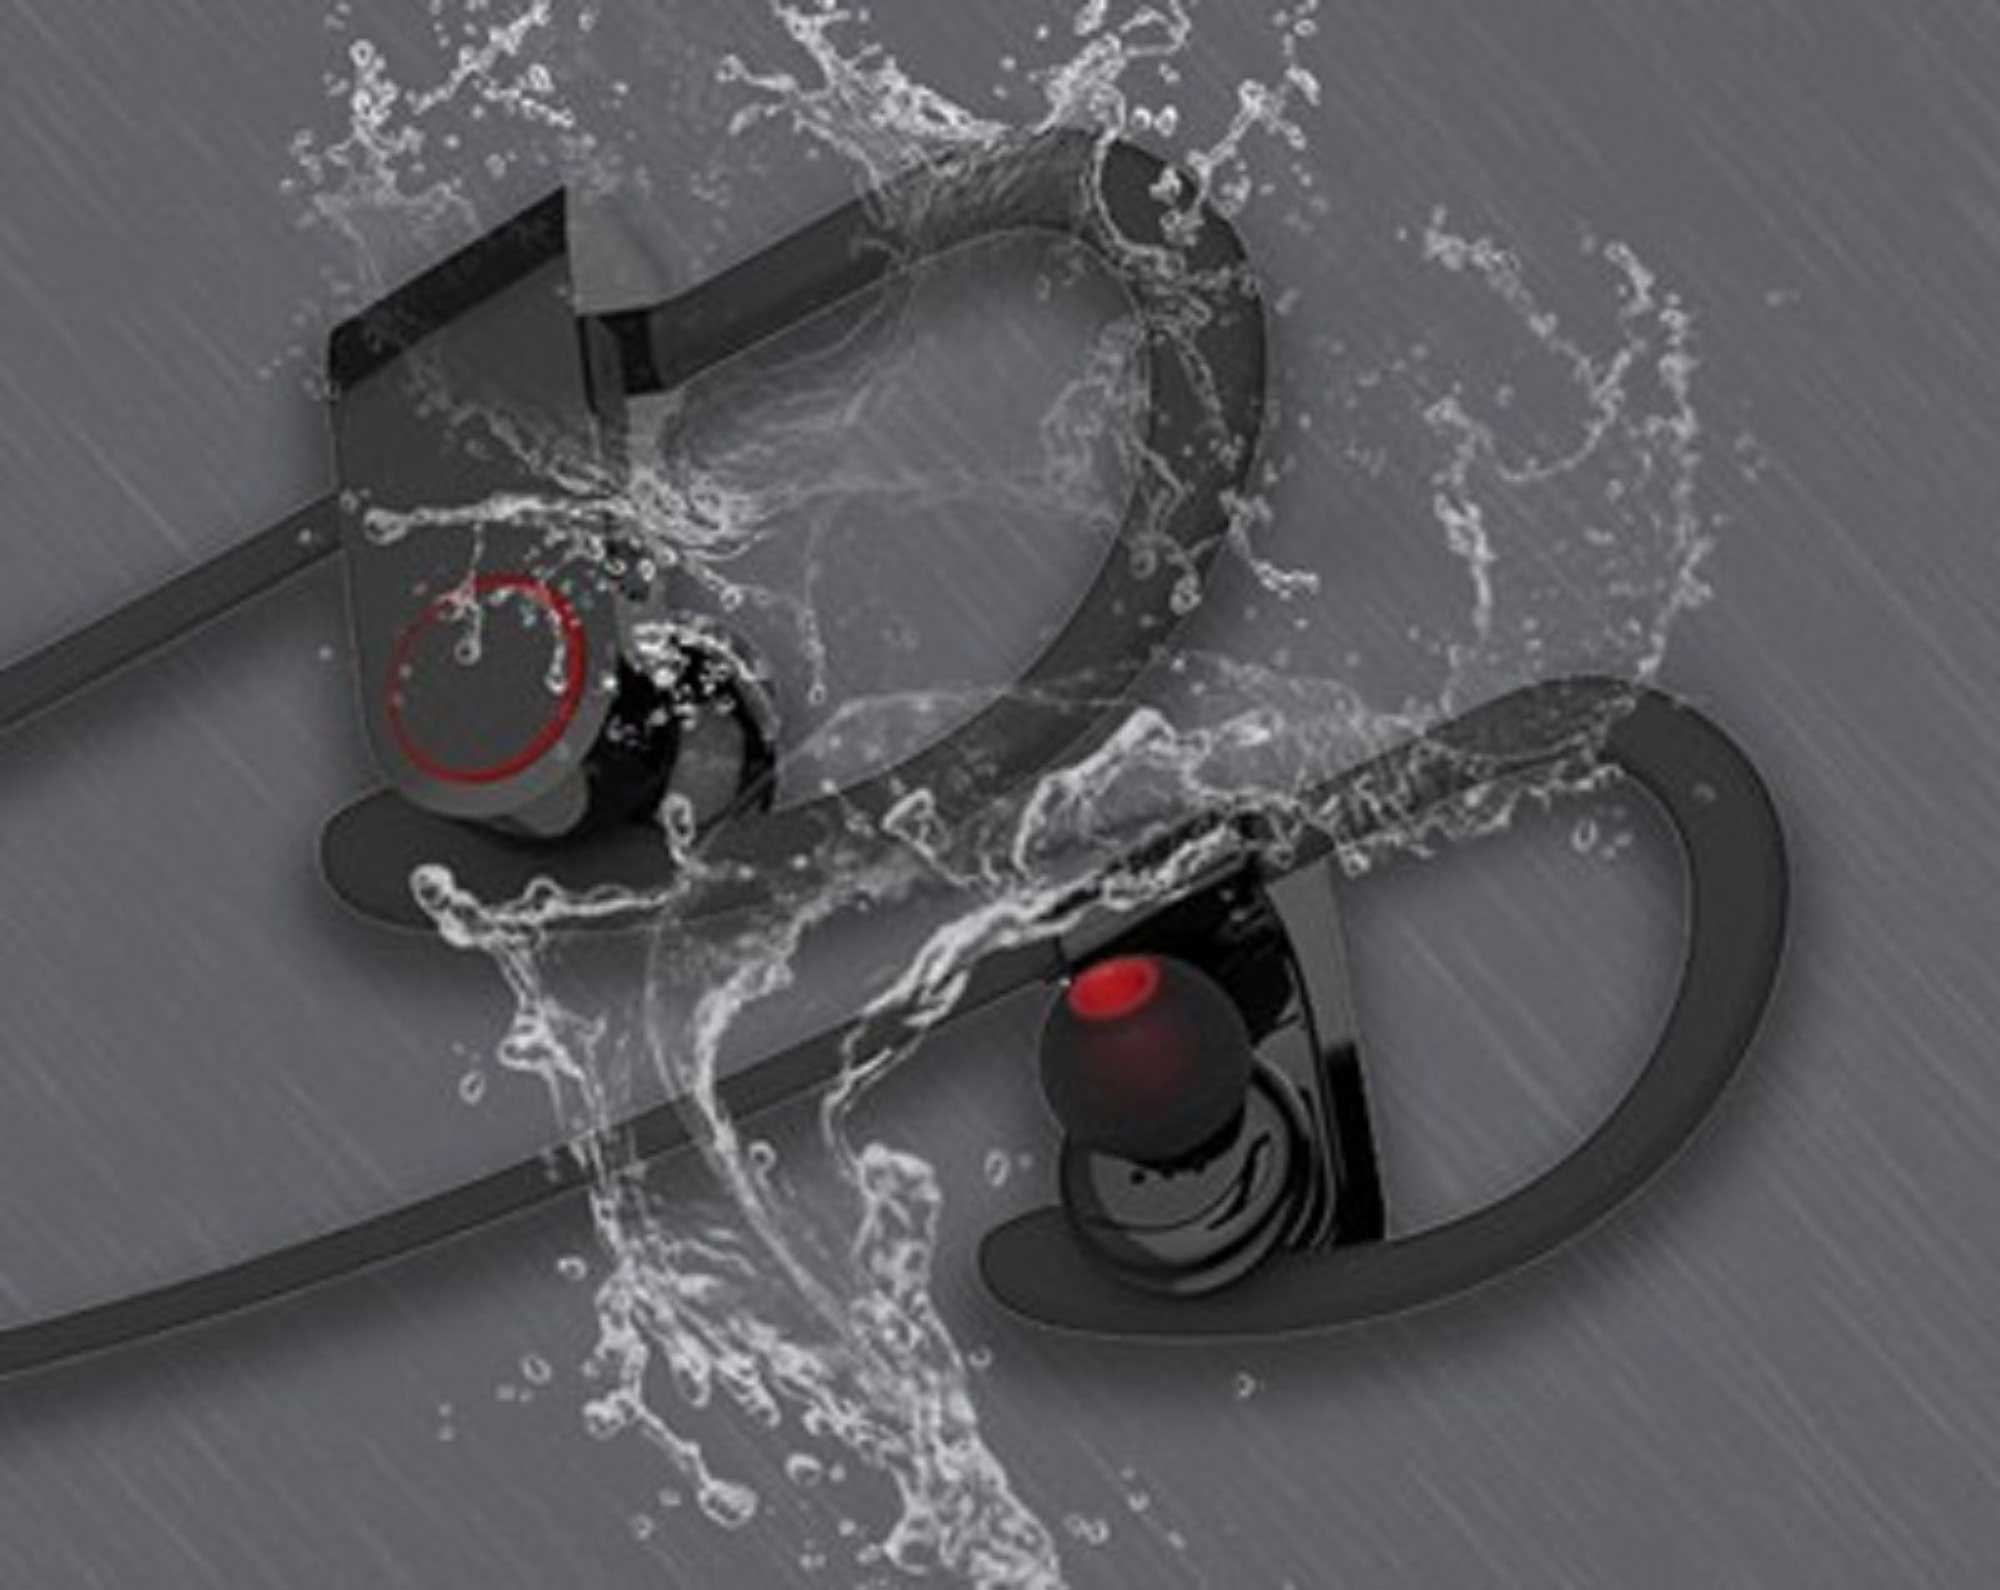 LOOKIT FitPro 2 SW Smartband U8 Multifunktion Kopfhörer Smartwatch schwarz Ear + Gesundheitsfunktionen mit TPU, Sport In